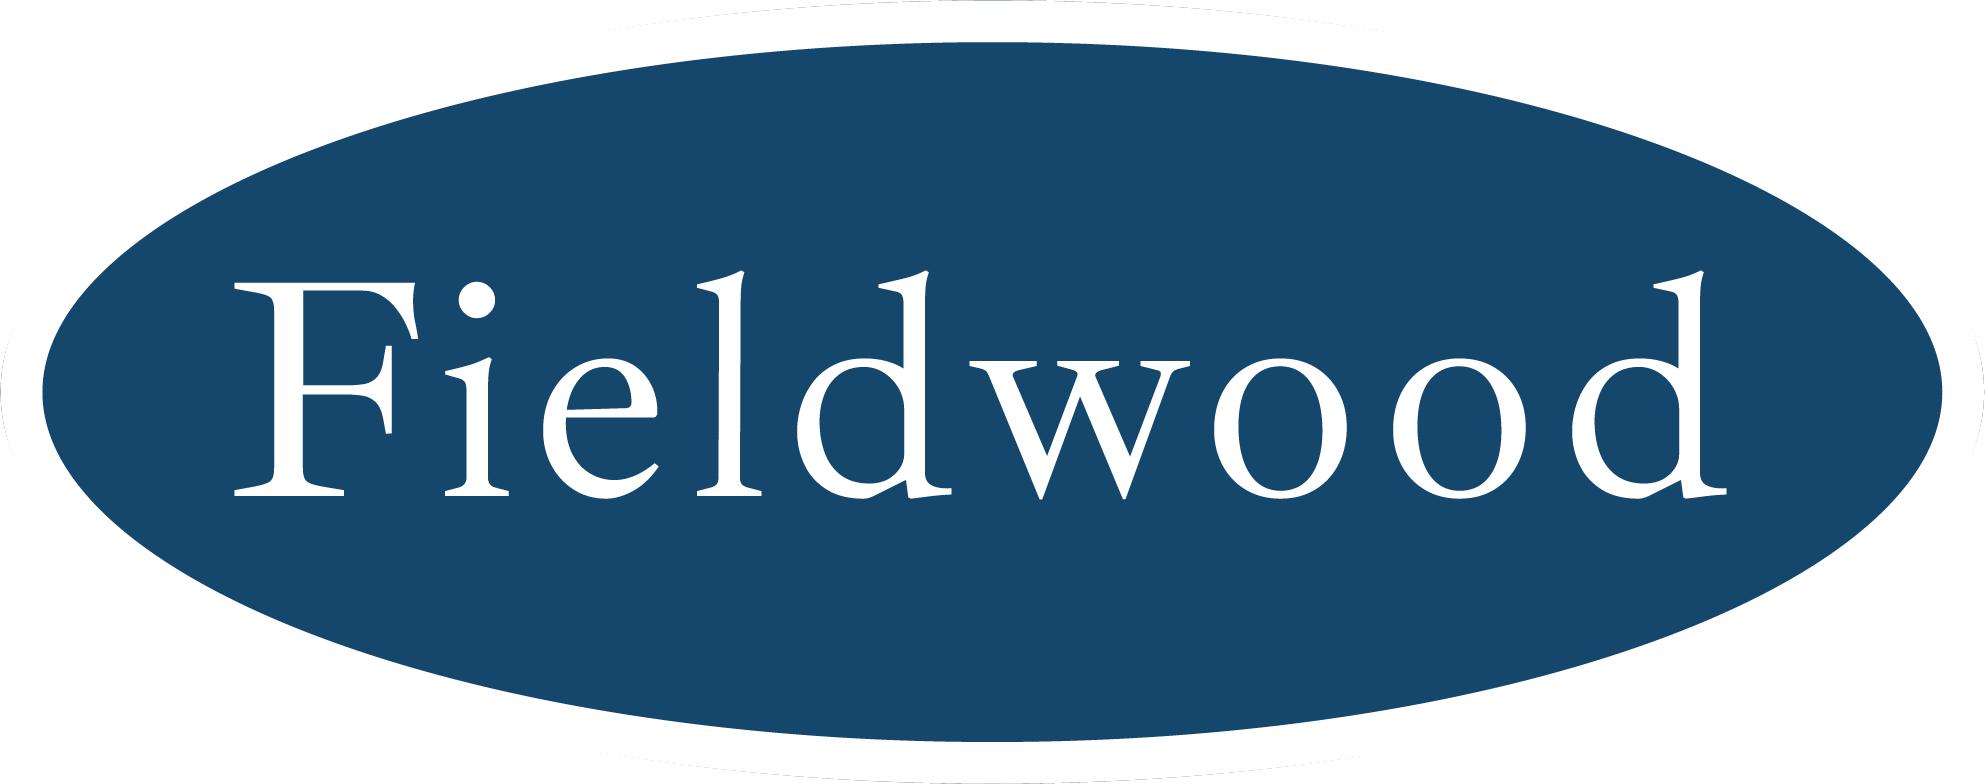 Fieldwood-oval